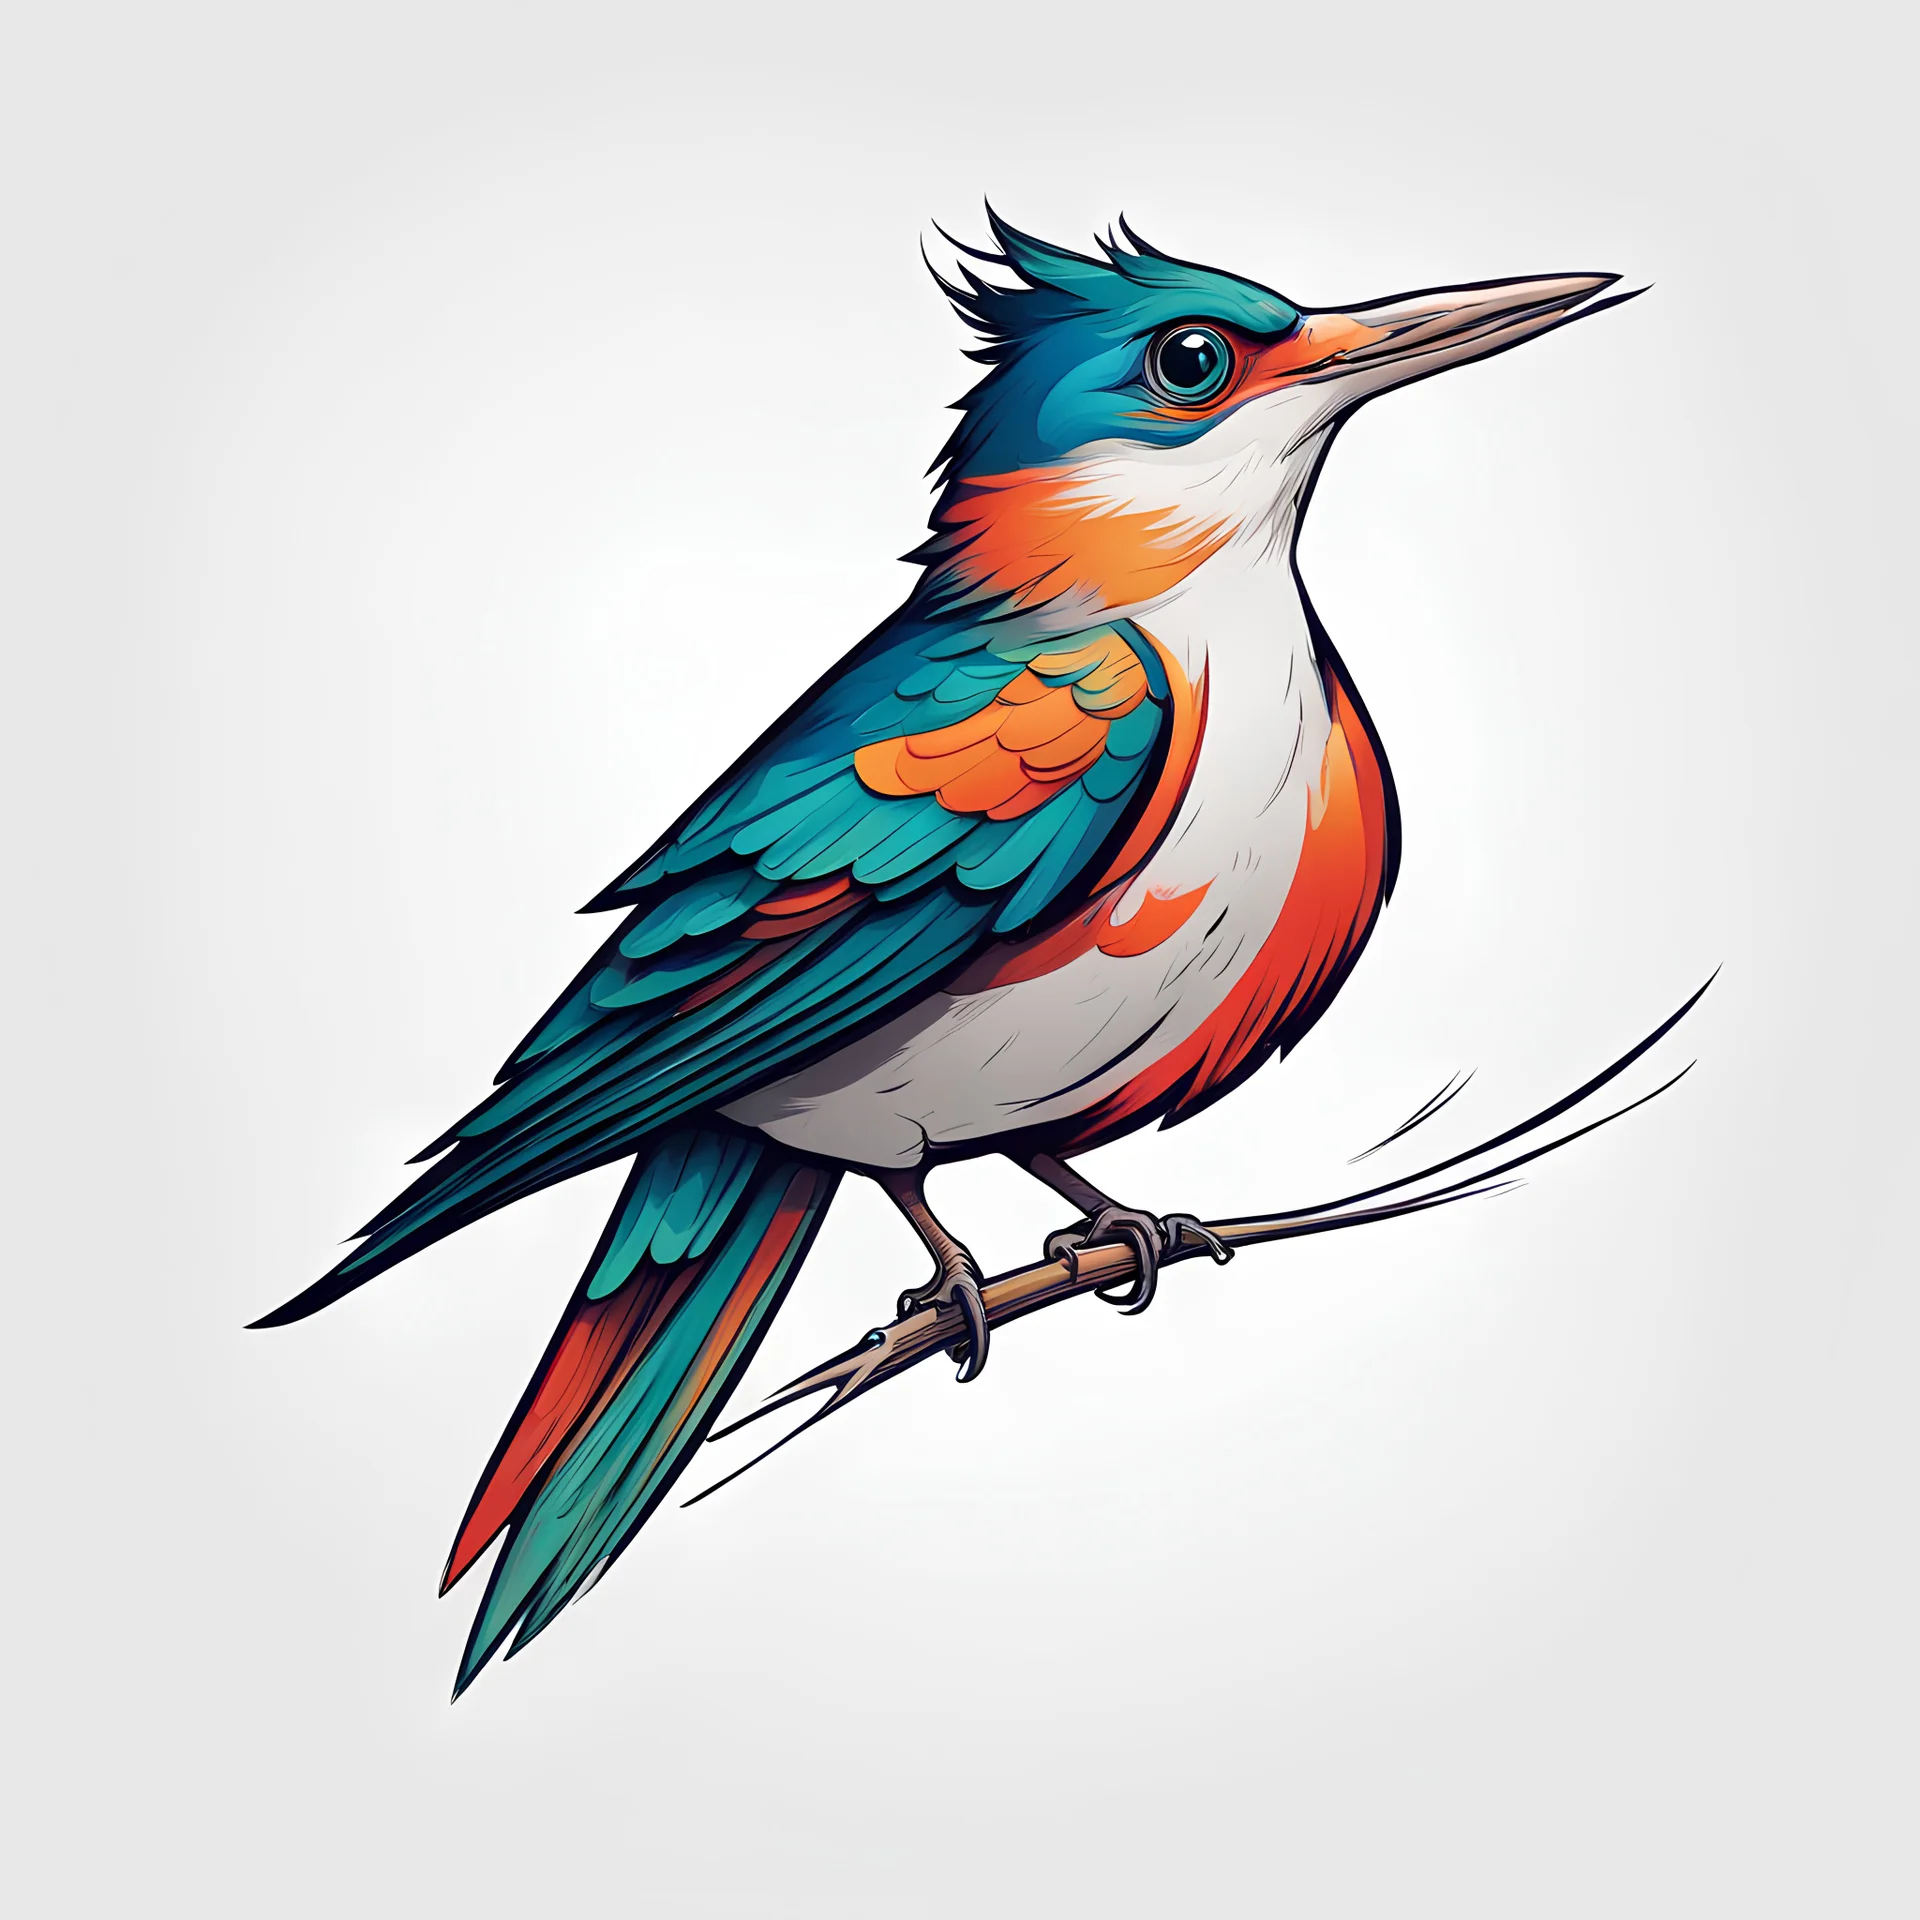 Cuckoo bird vector silhouettes. Stock Vector by ©airin.dizain 80698244